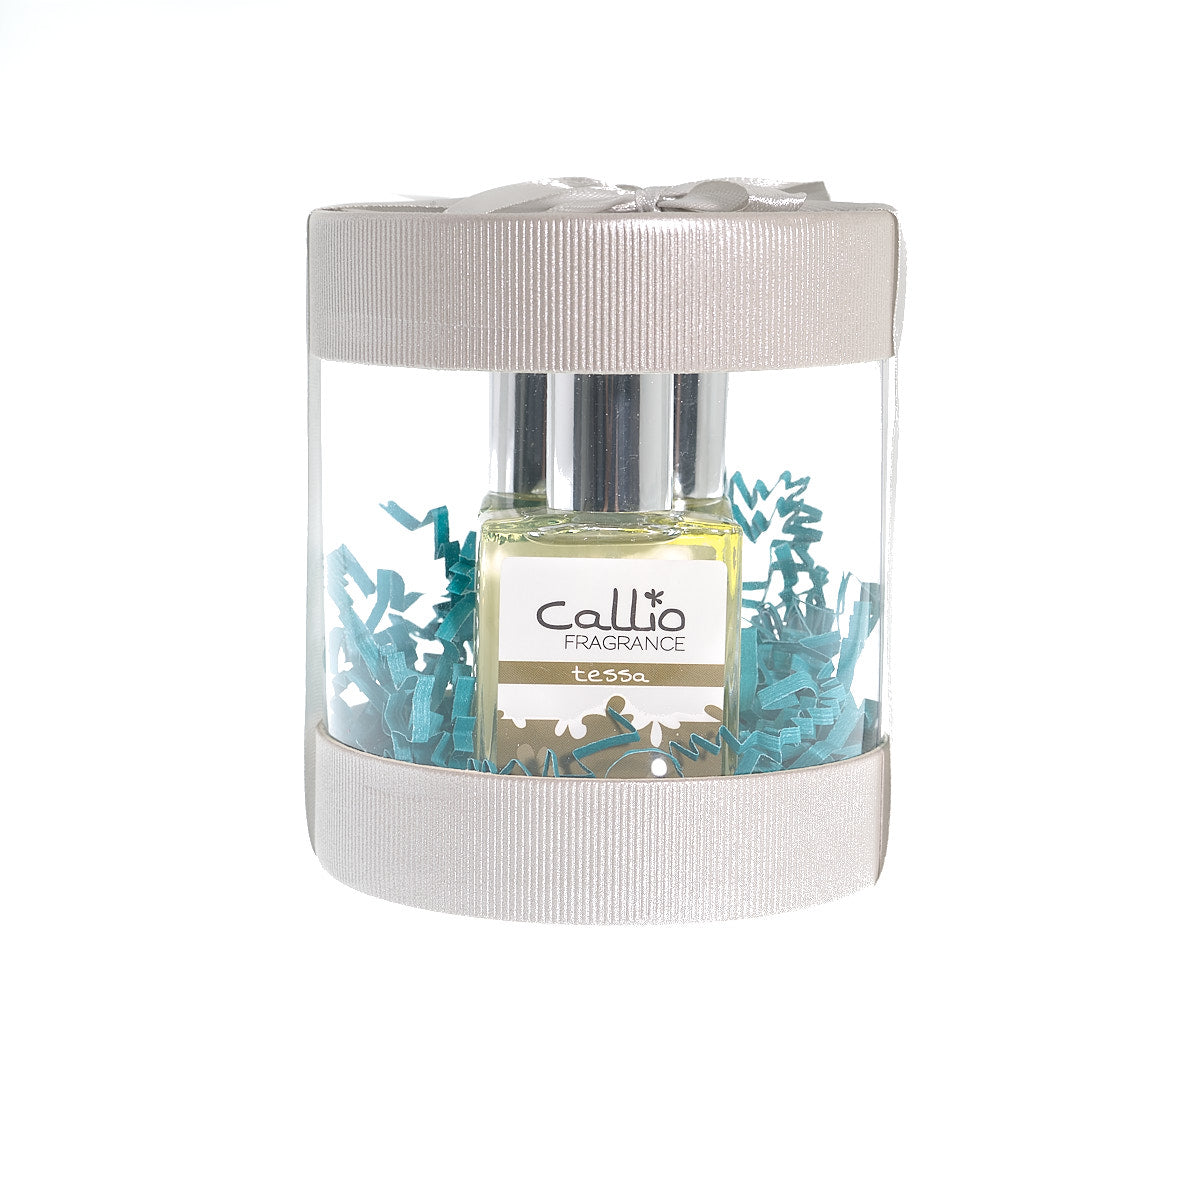 Callio Fragrance Perfume Gift Set featuring Tessa, Kiele, and Sunny.